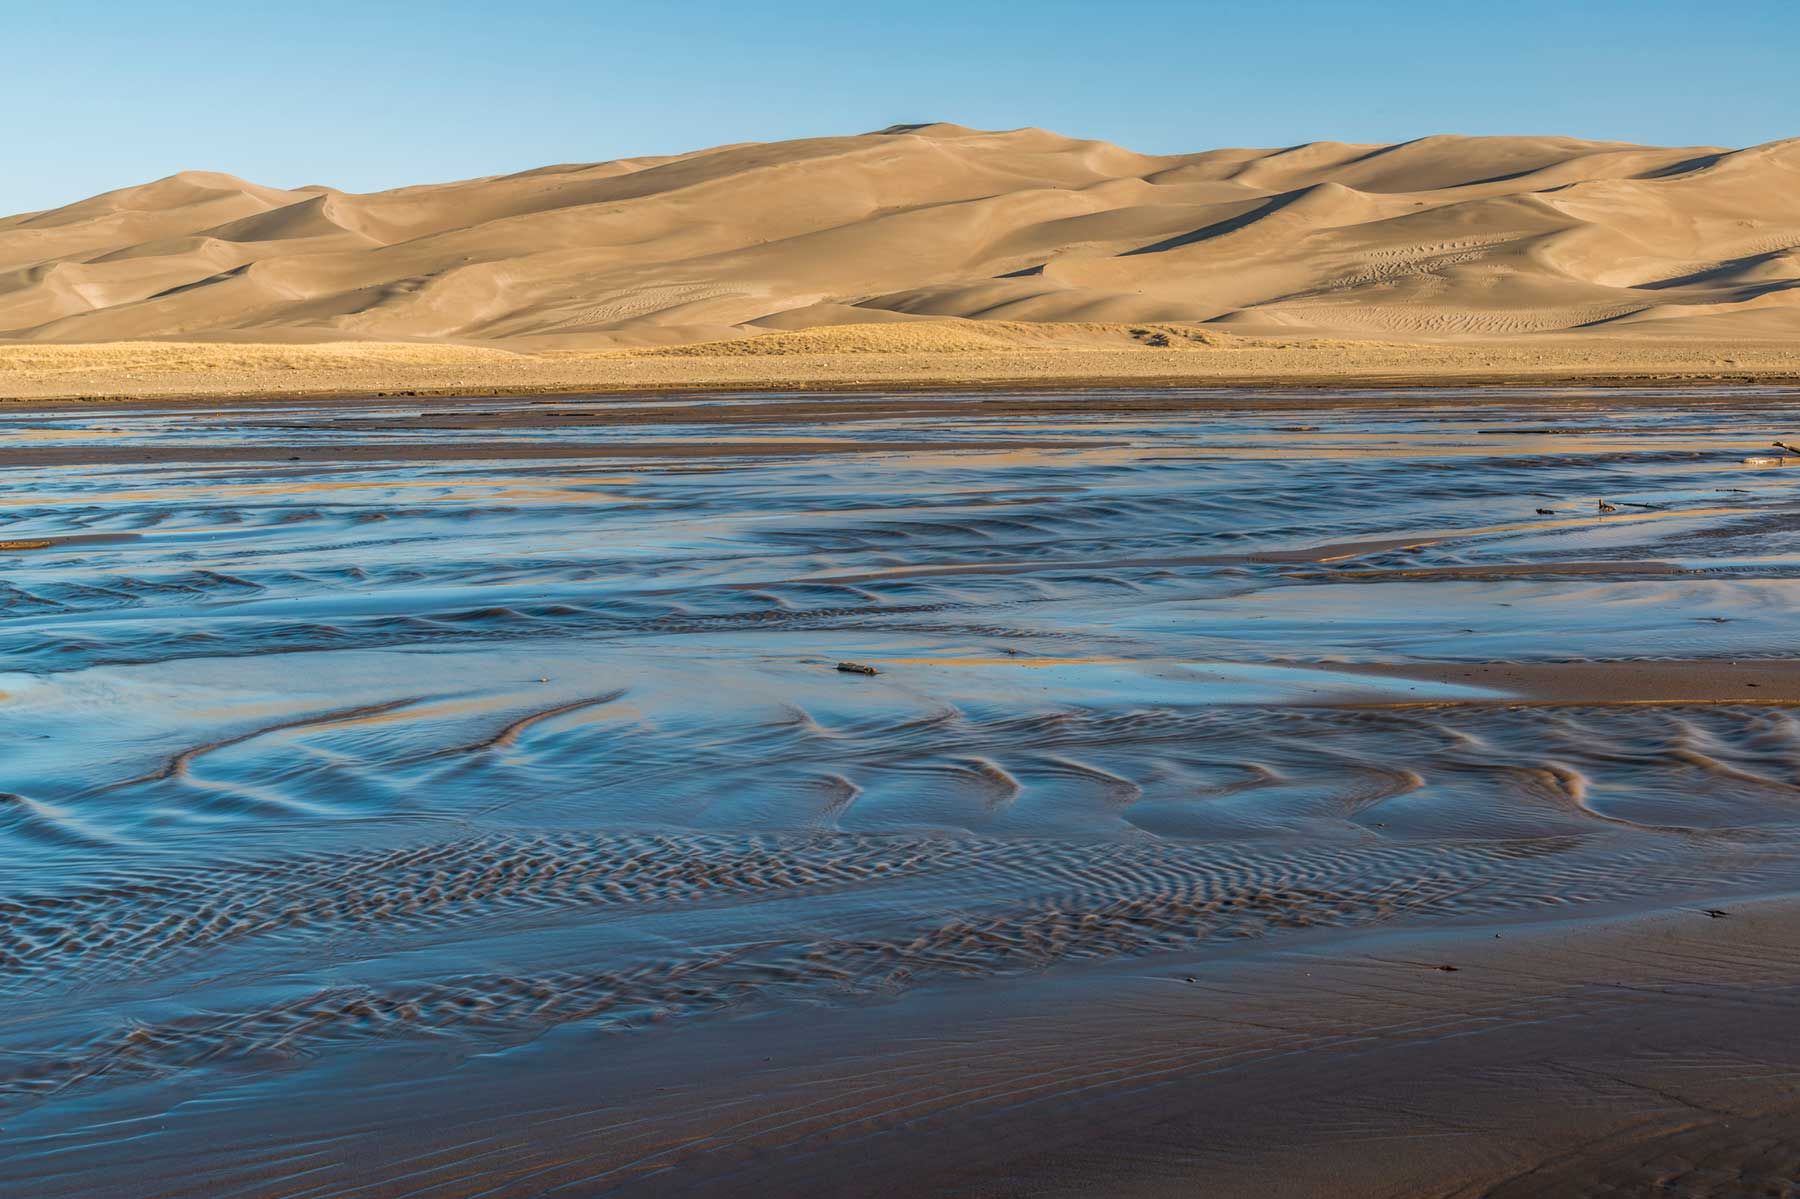 Pješčane dine i potok Medano pri izlasku sunca, Nacionalni park Great Sand Dunes, Colorado